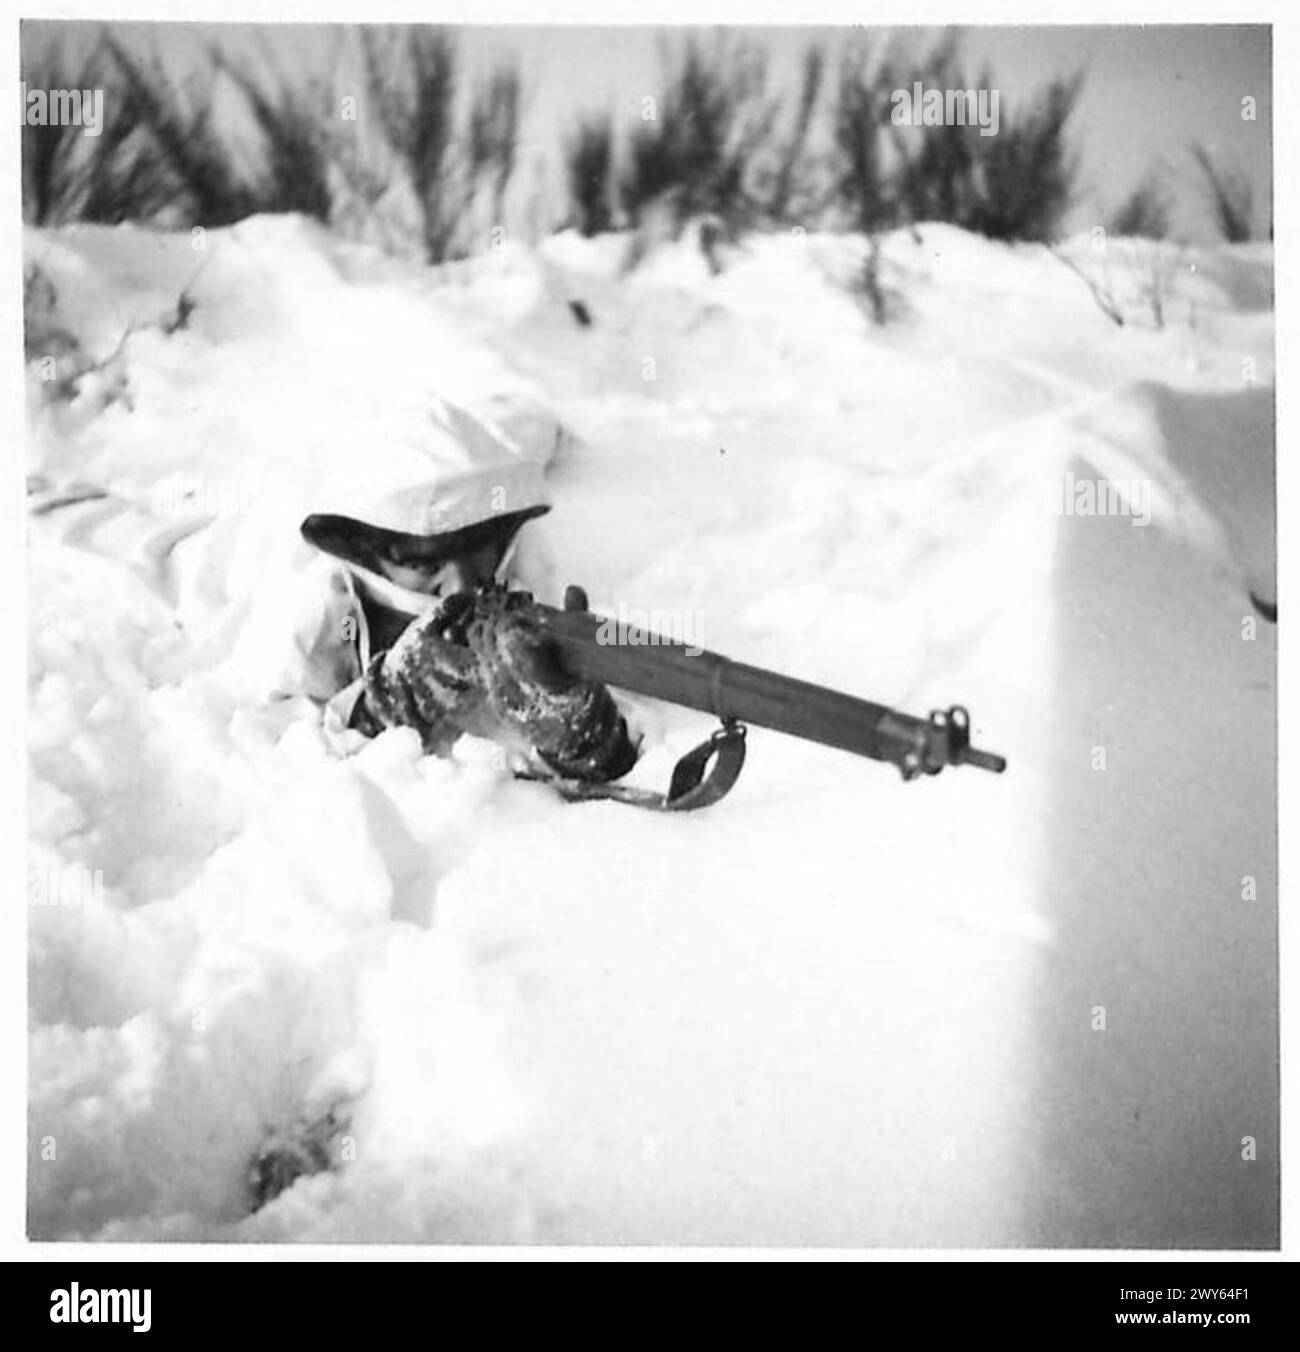 "MOSTRA ABITI" PER PATTUGLIE - Pte Duffy di Bellshill, Lanarkshire sulla neve. , British Army, 21st Army Group Foto Stock